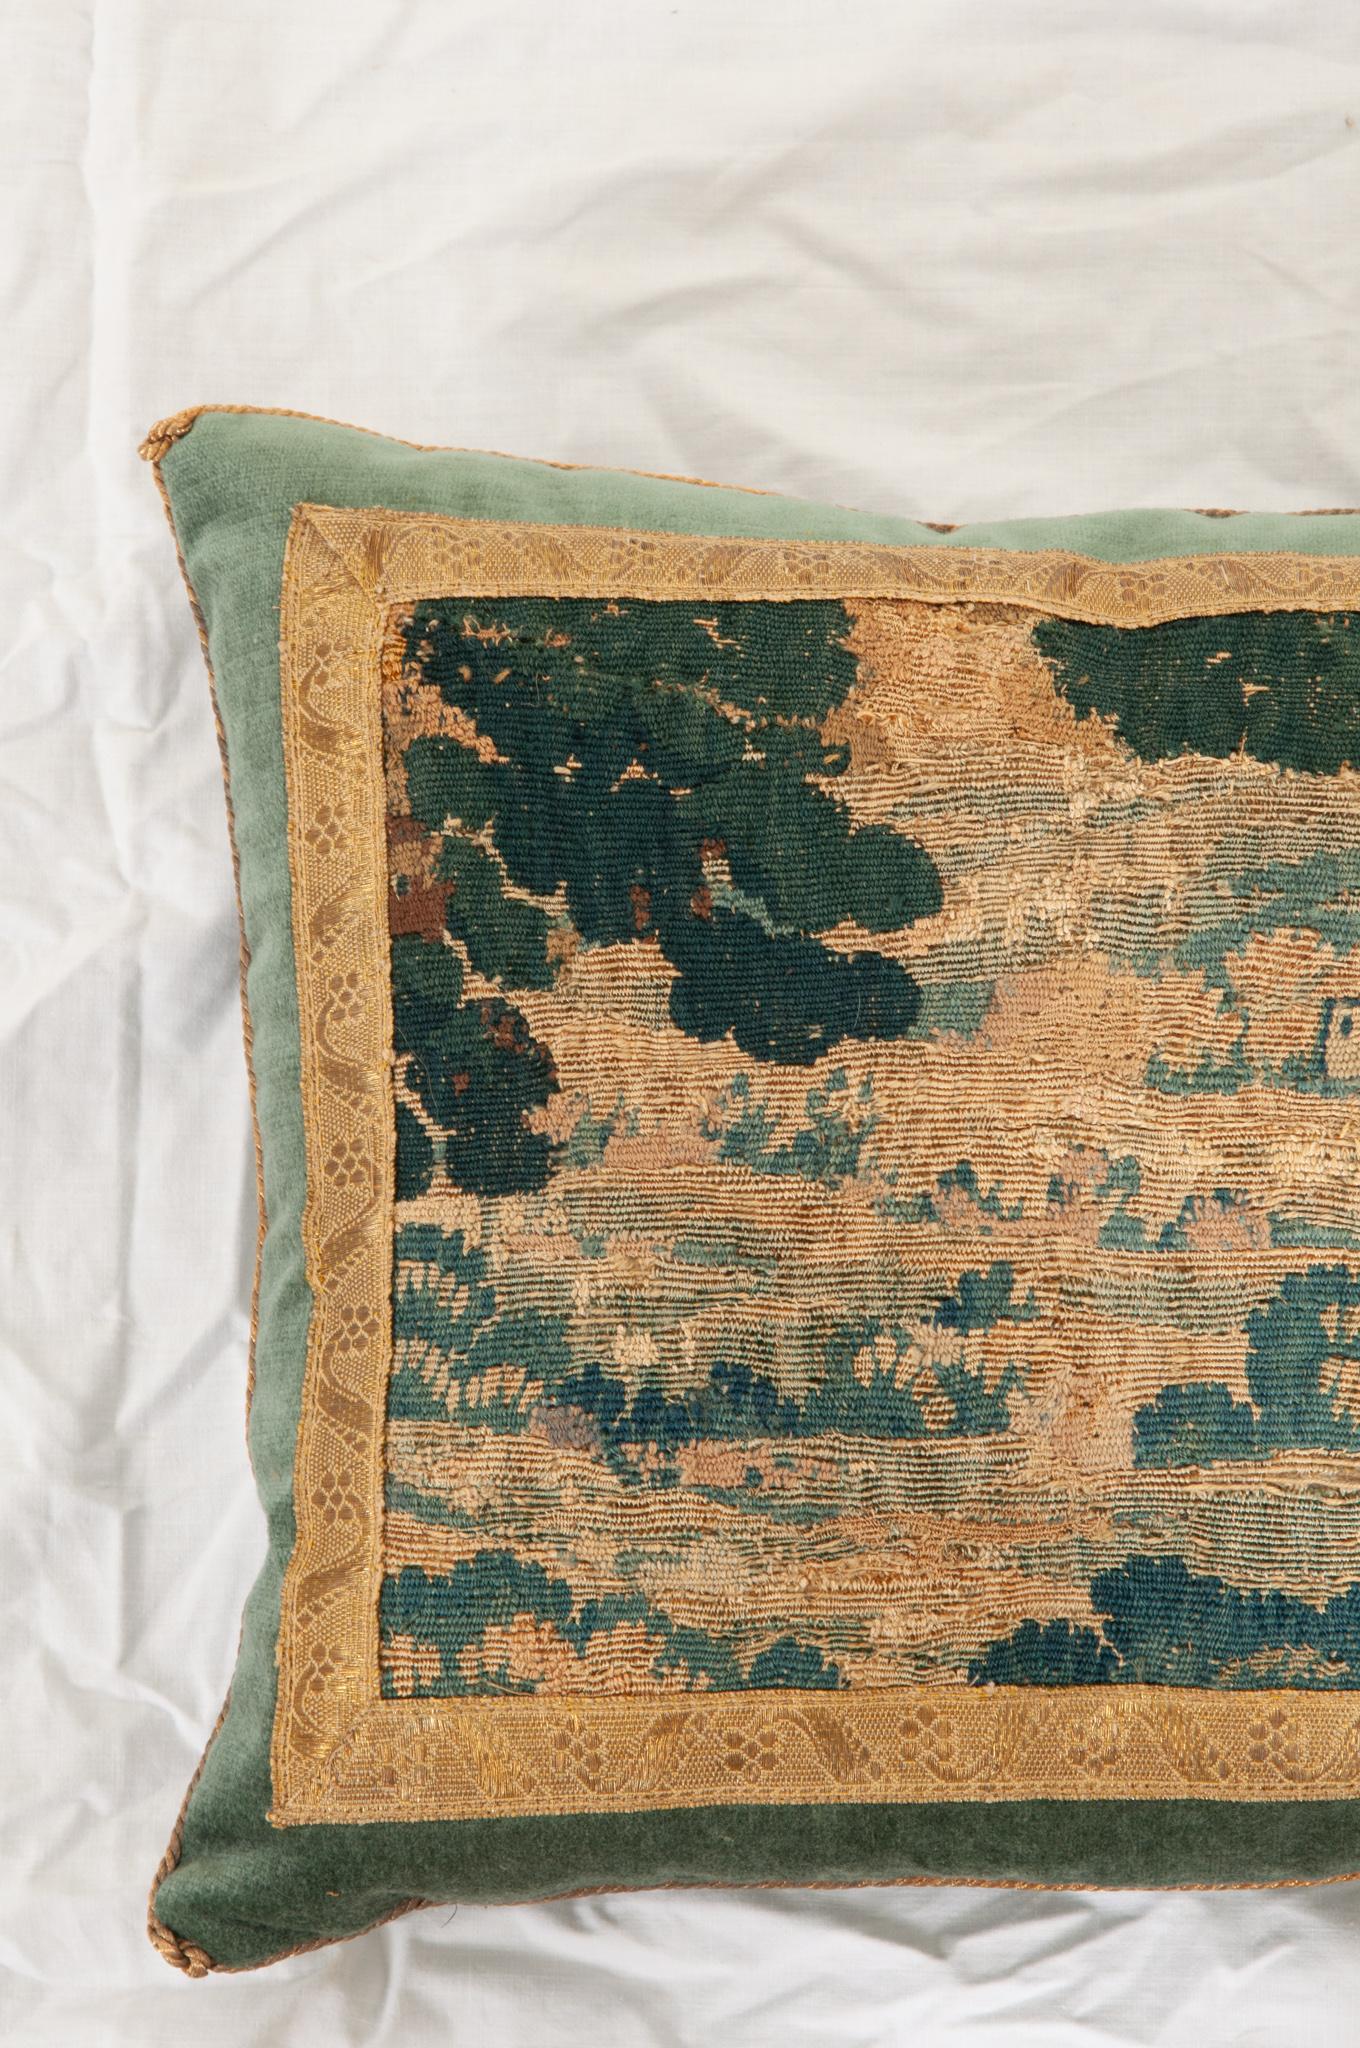 Other B.Viz Antique Textile Pillow